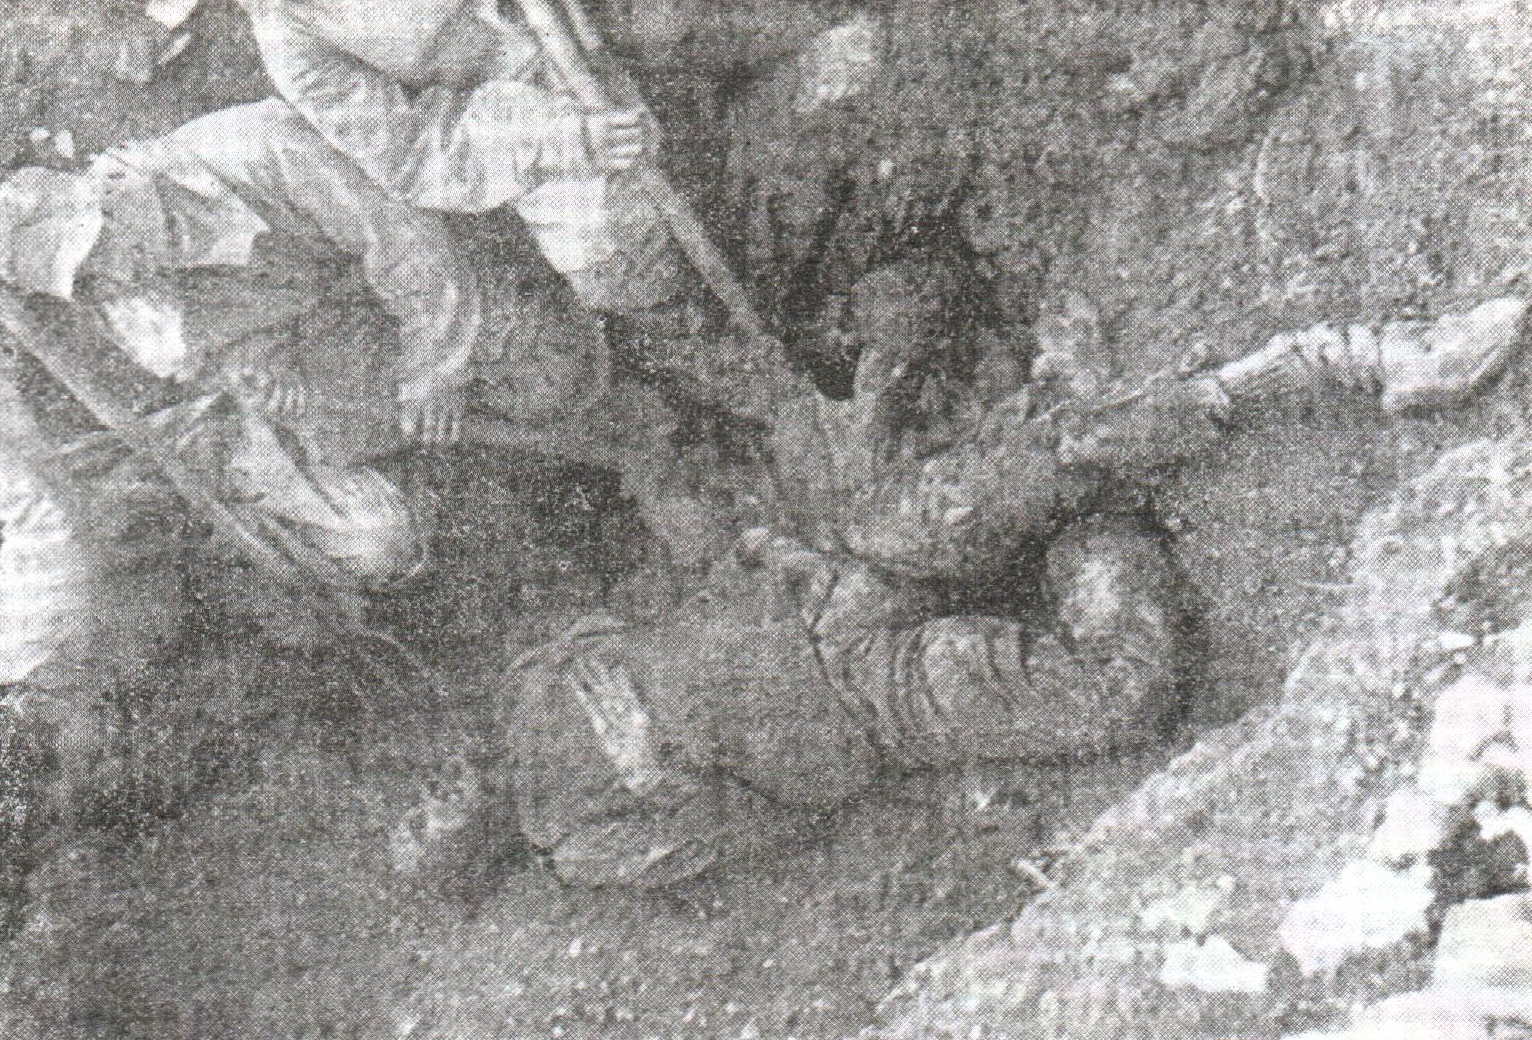 Ekshumirani leševi u logoru Slana na Pagu prije spaljivanja. Talijanska fotografija iz septembra 1941. 